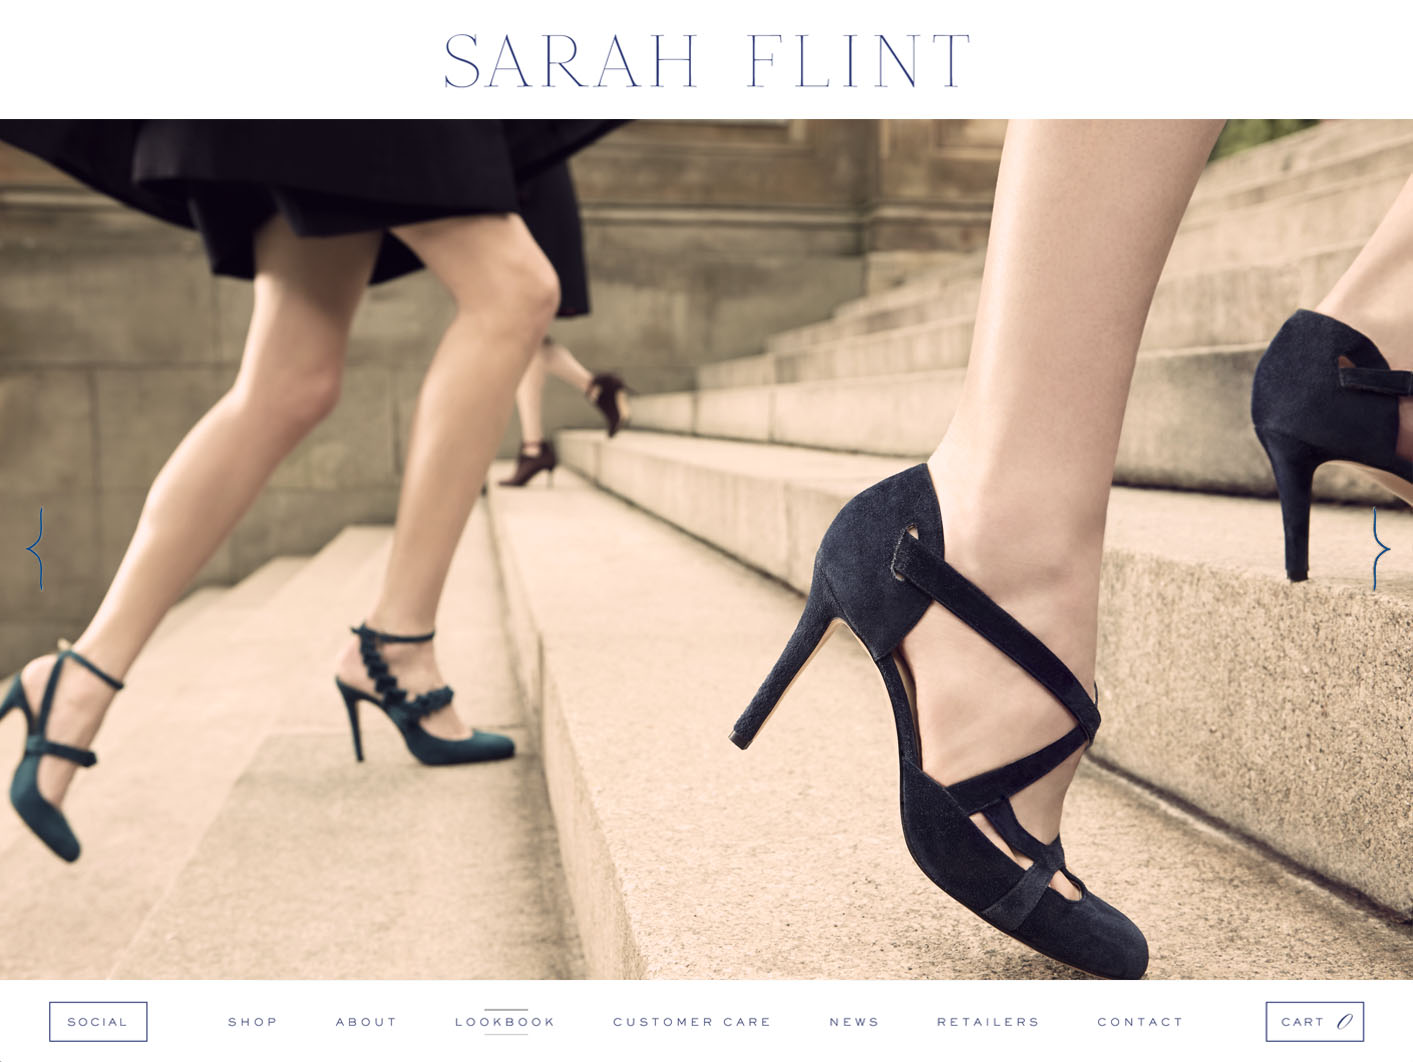 Sarah Flint website designed by Scissor.